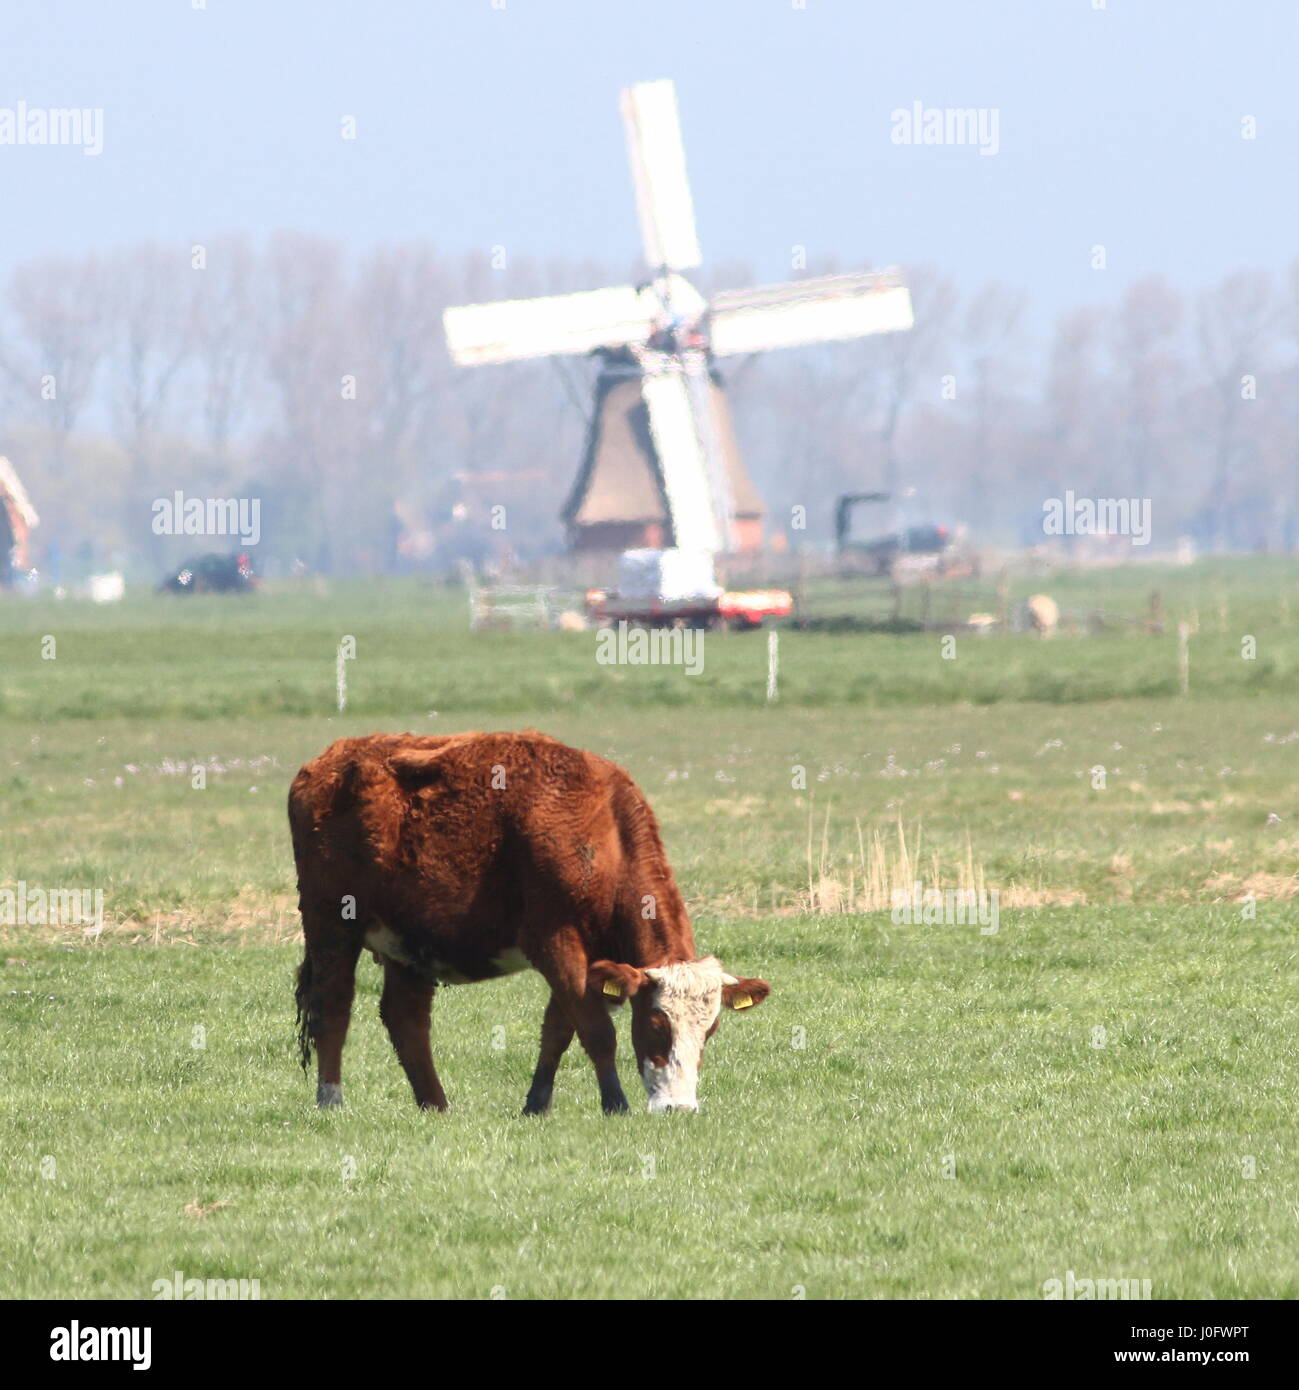 Traditionelle Blaarkoppen Rinder ("Blister-Kopf"), eine alte holländische Rasse gefunden hauptsächlich in der Provinz Groningen, Norden der Niederlande. Stockfoto